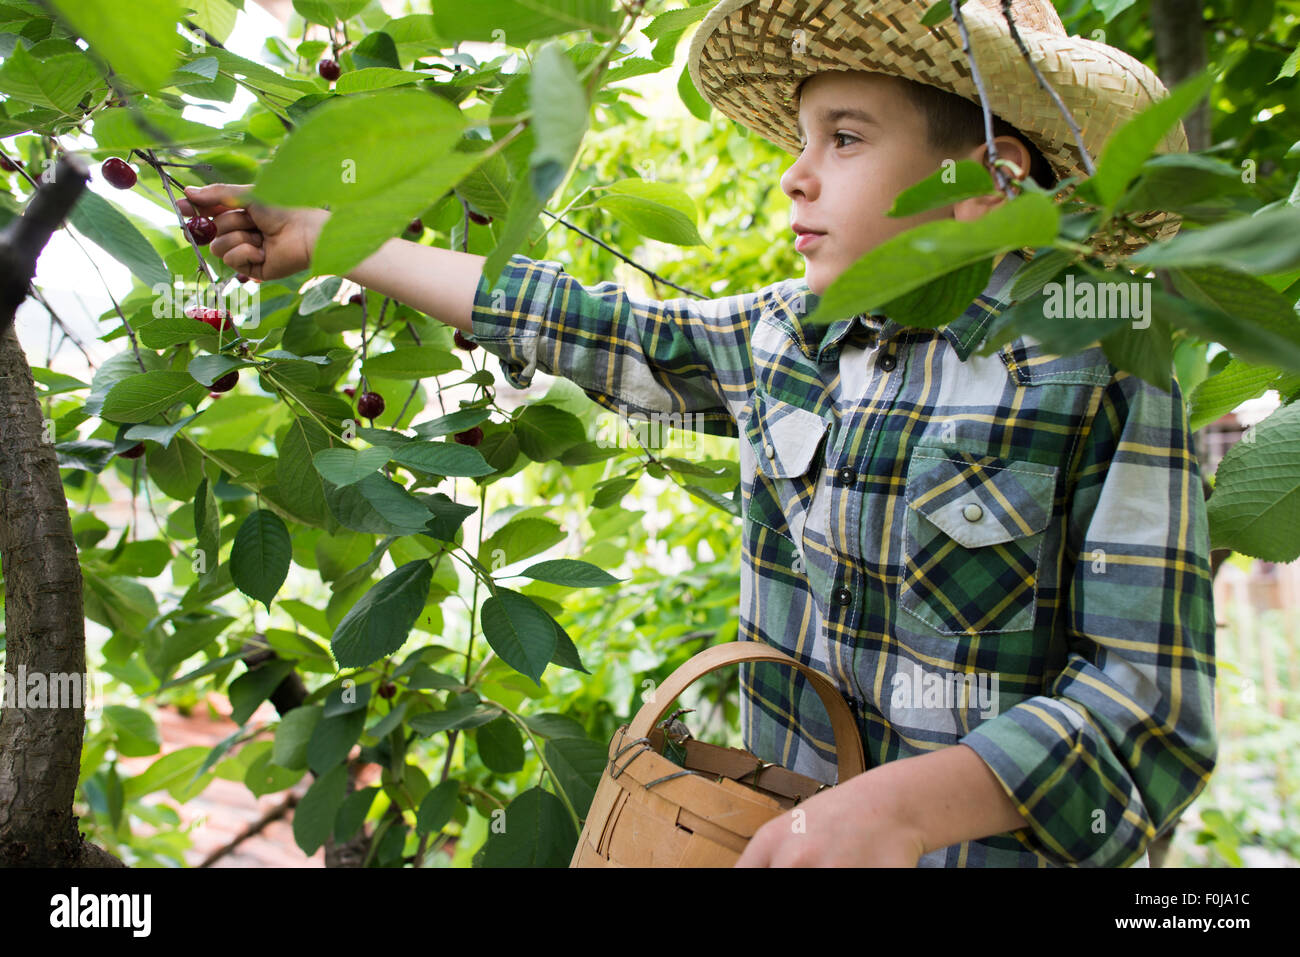 La récolte de l'enfant des griottes sur un arbre. Banque D'Images